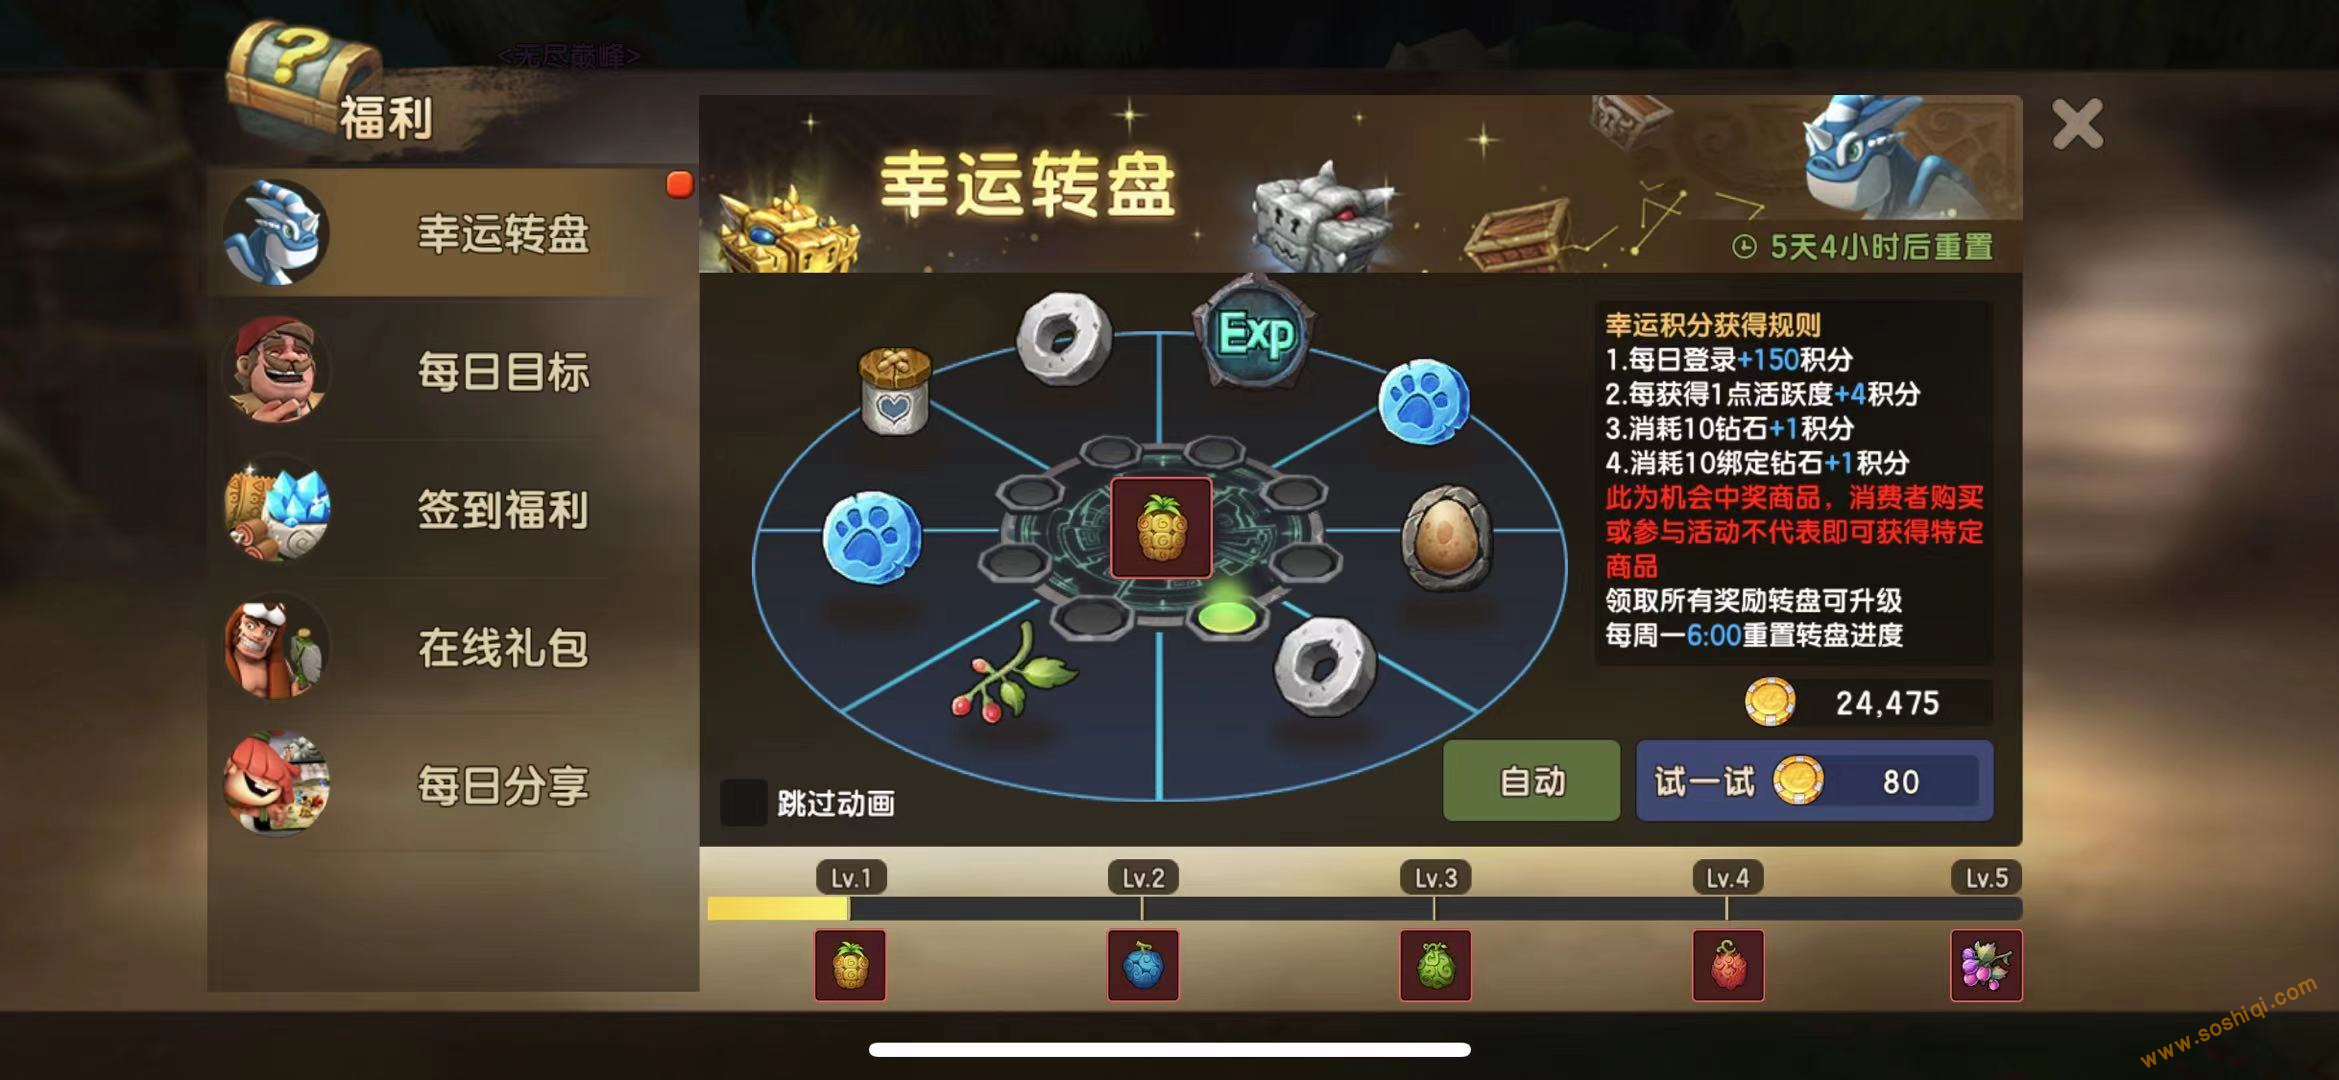 石器时代幸运中国第一个网游大转盘玩法讨论